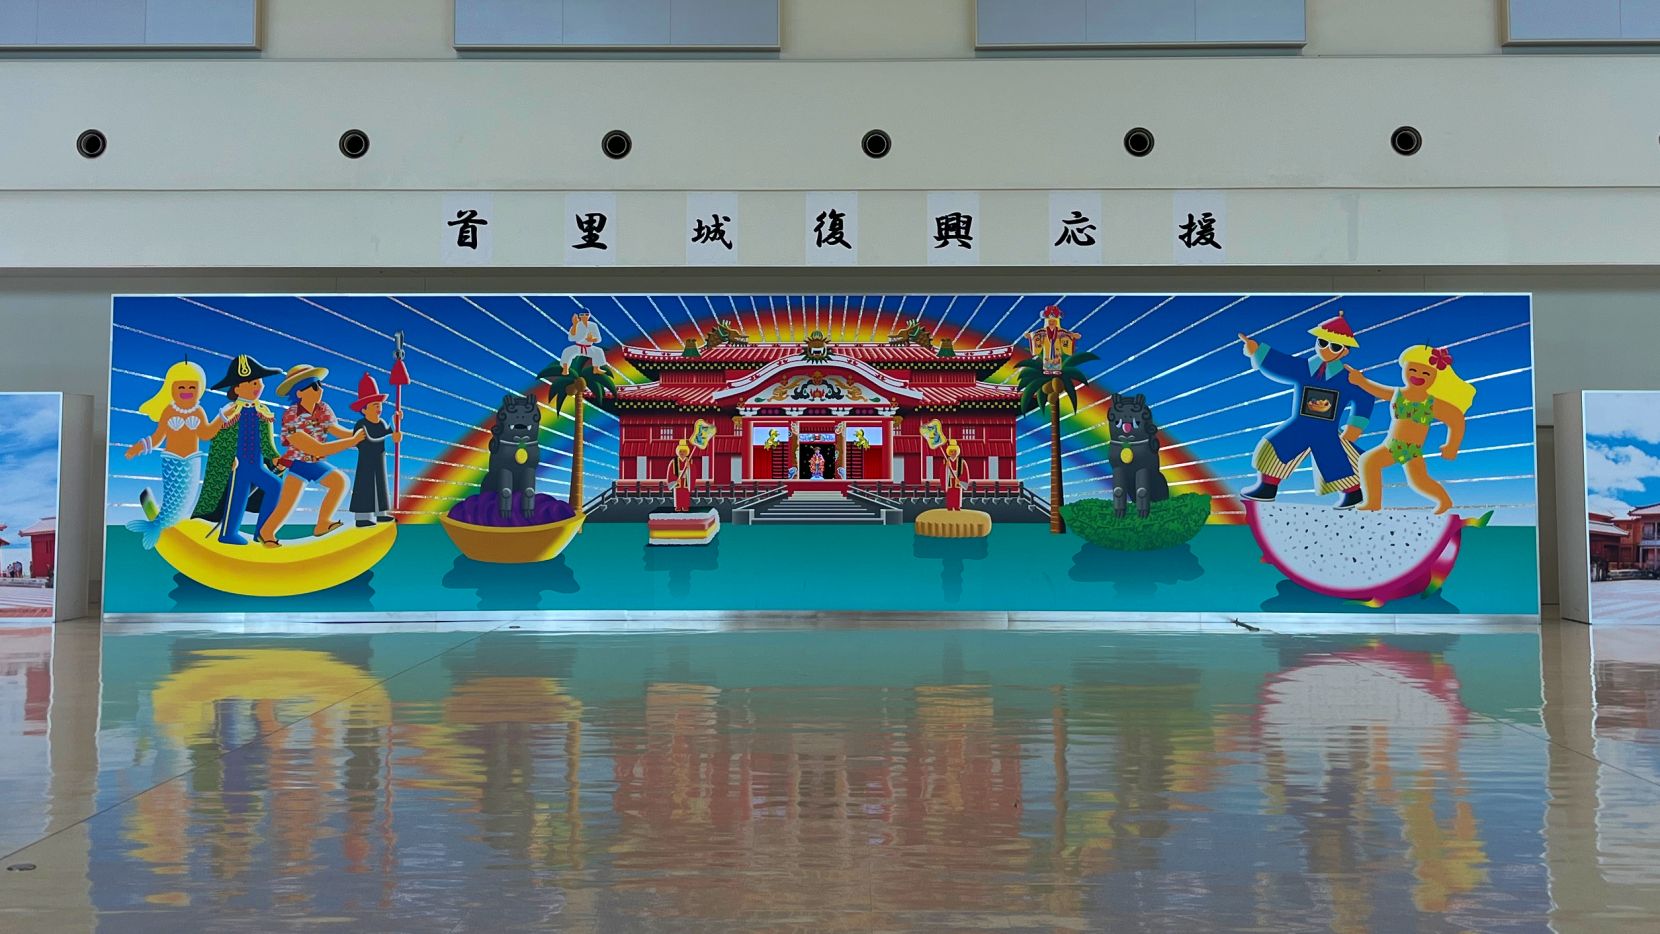 Okinawa mural.